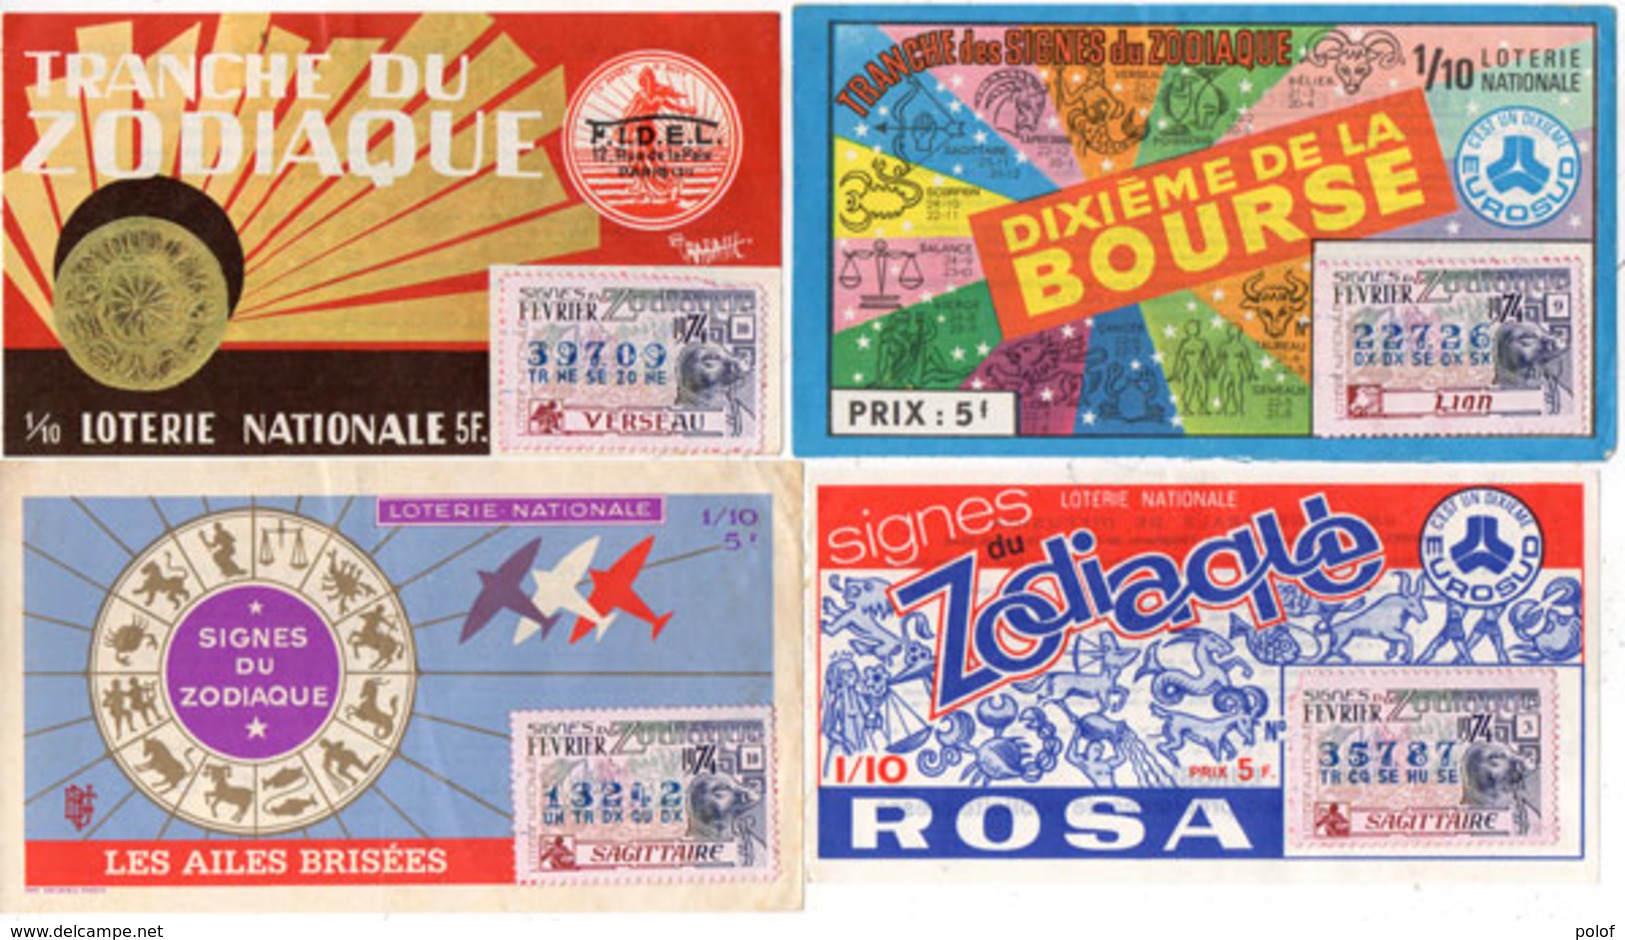 4 Billets De Loterie - Zodiaque - Les Ailes Brisées - Rosa - F.I.D.EL. - Bourse   (110111) - Billets De Loterie